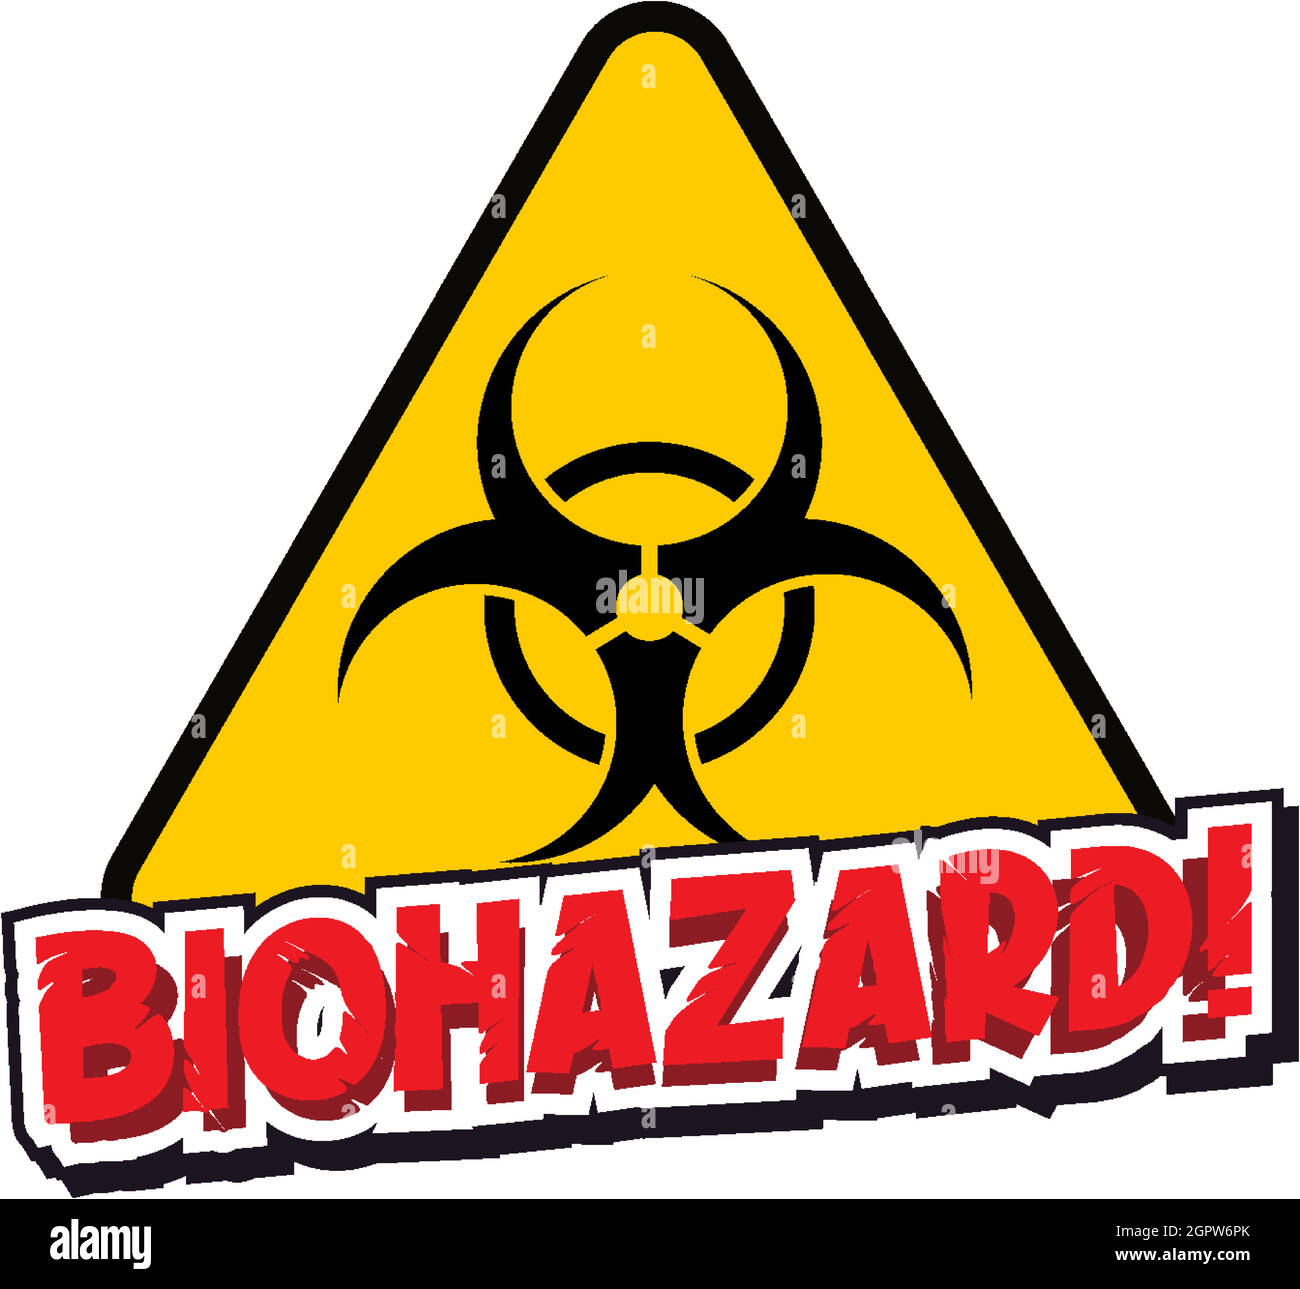 Schriftdesign für Wort Biohazard mit Warnzeichen Stock Vektor